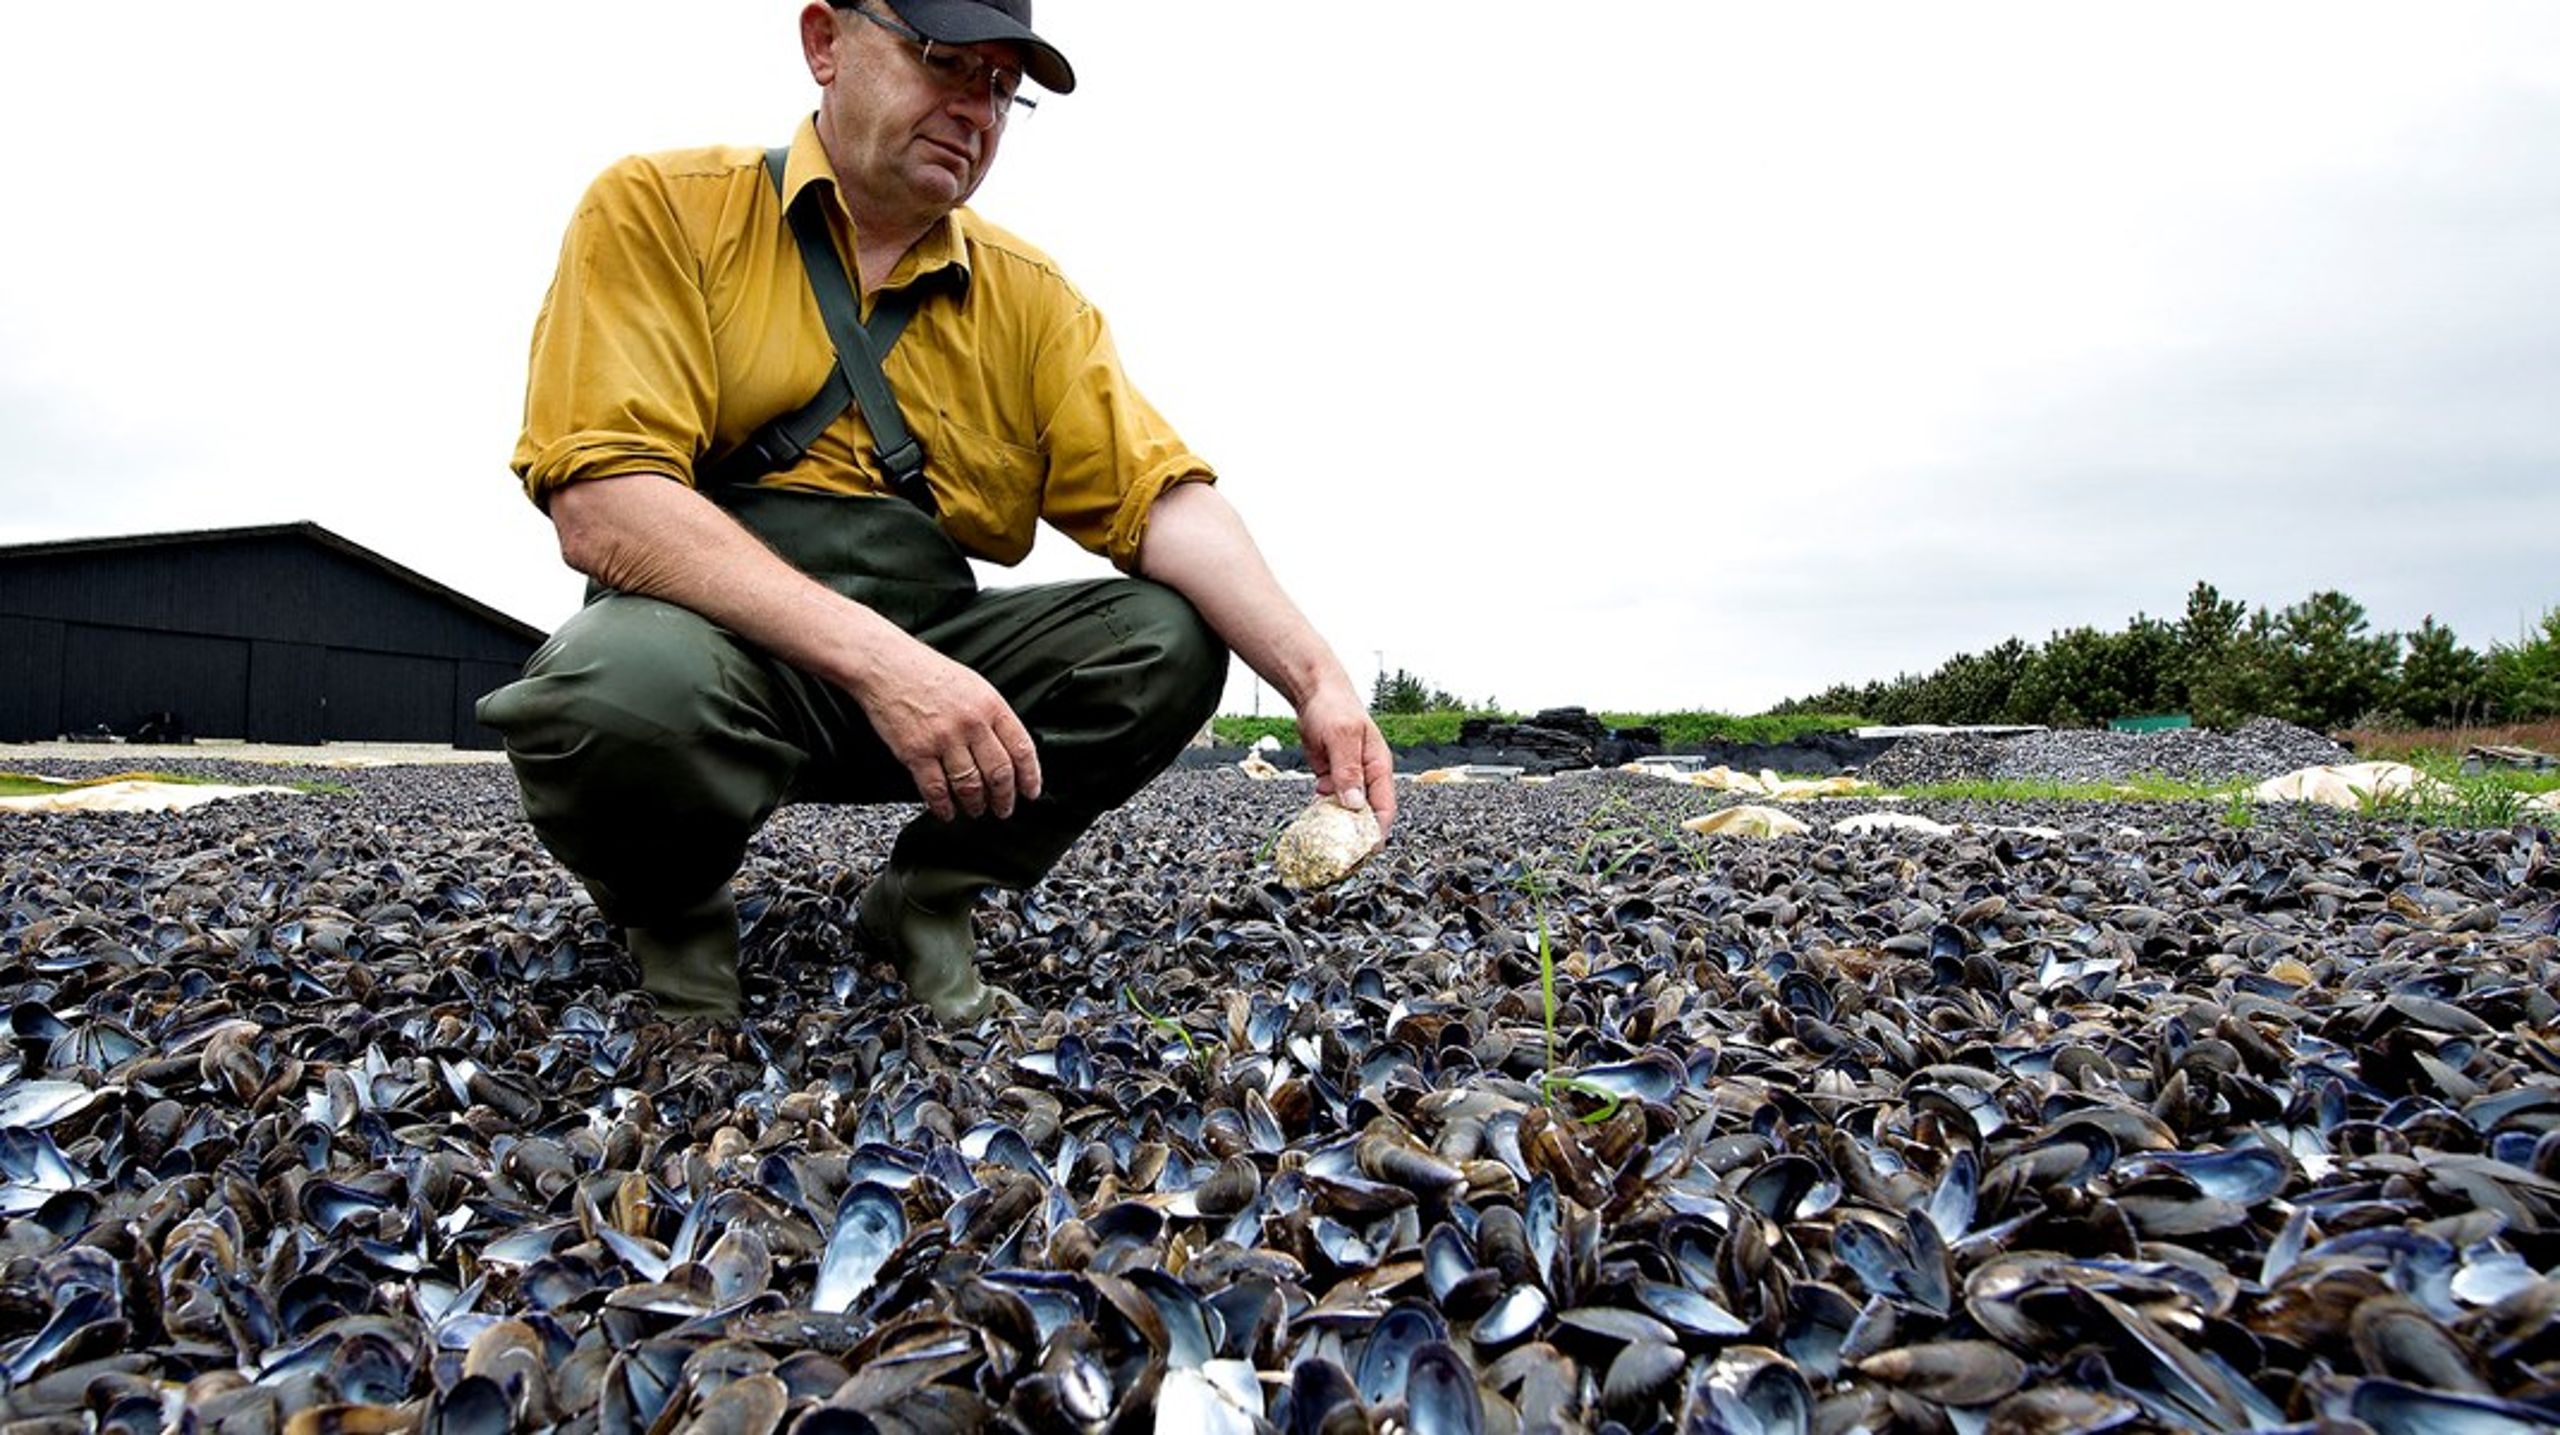 Opdræt af muslinger forurener ikke, da opdrættet foregår uden tilførsel af foder eller hjælpestoffer, skriver Jens Kjerulf Petersen.